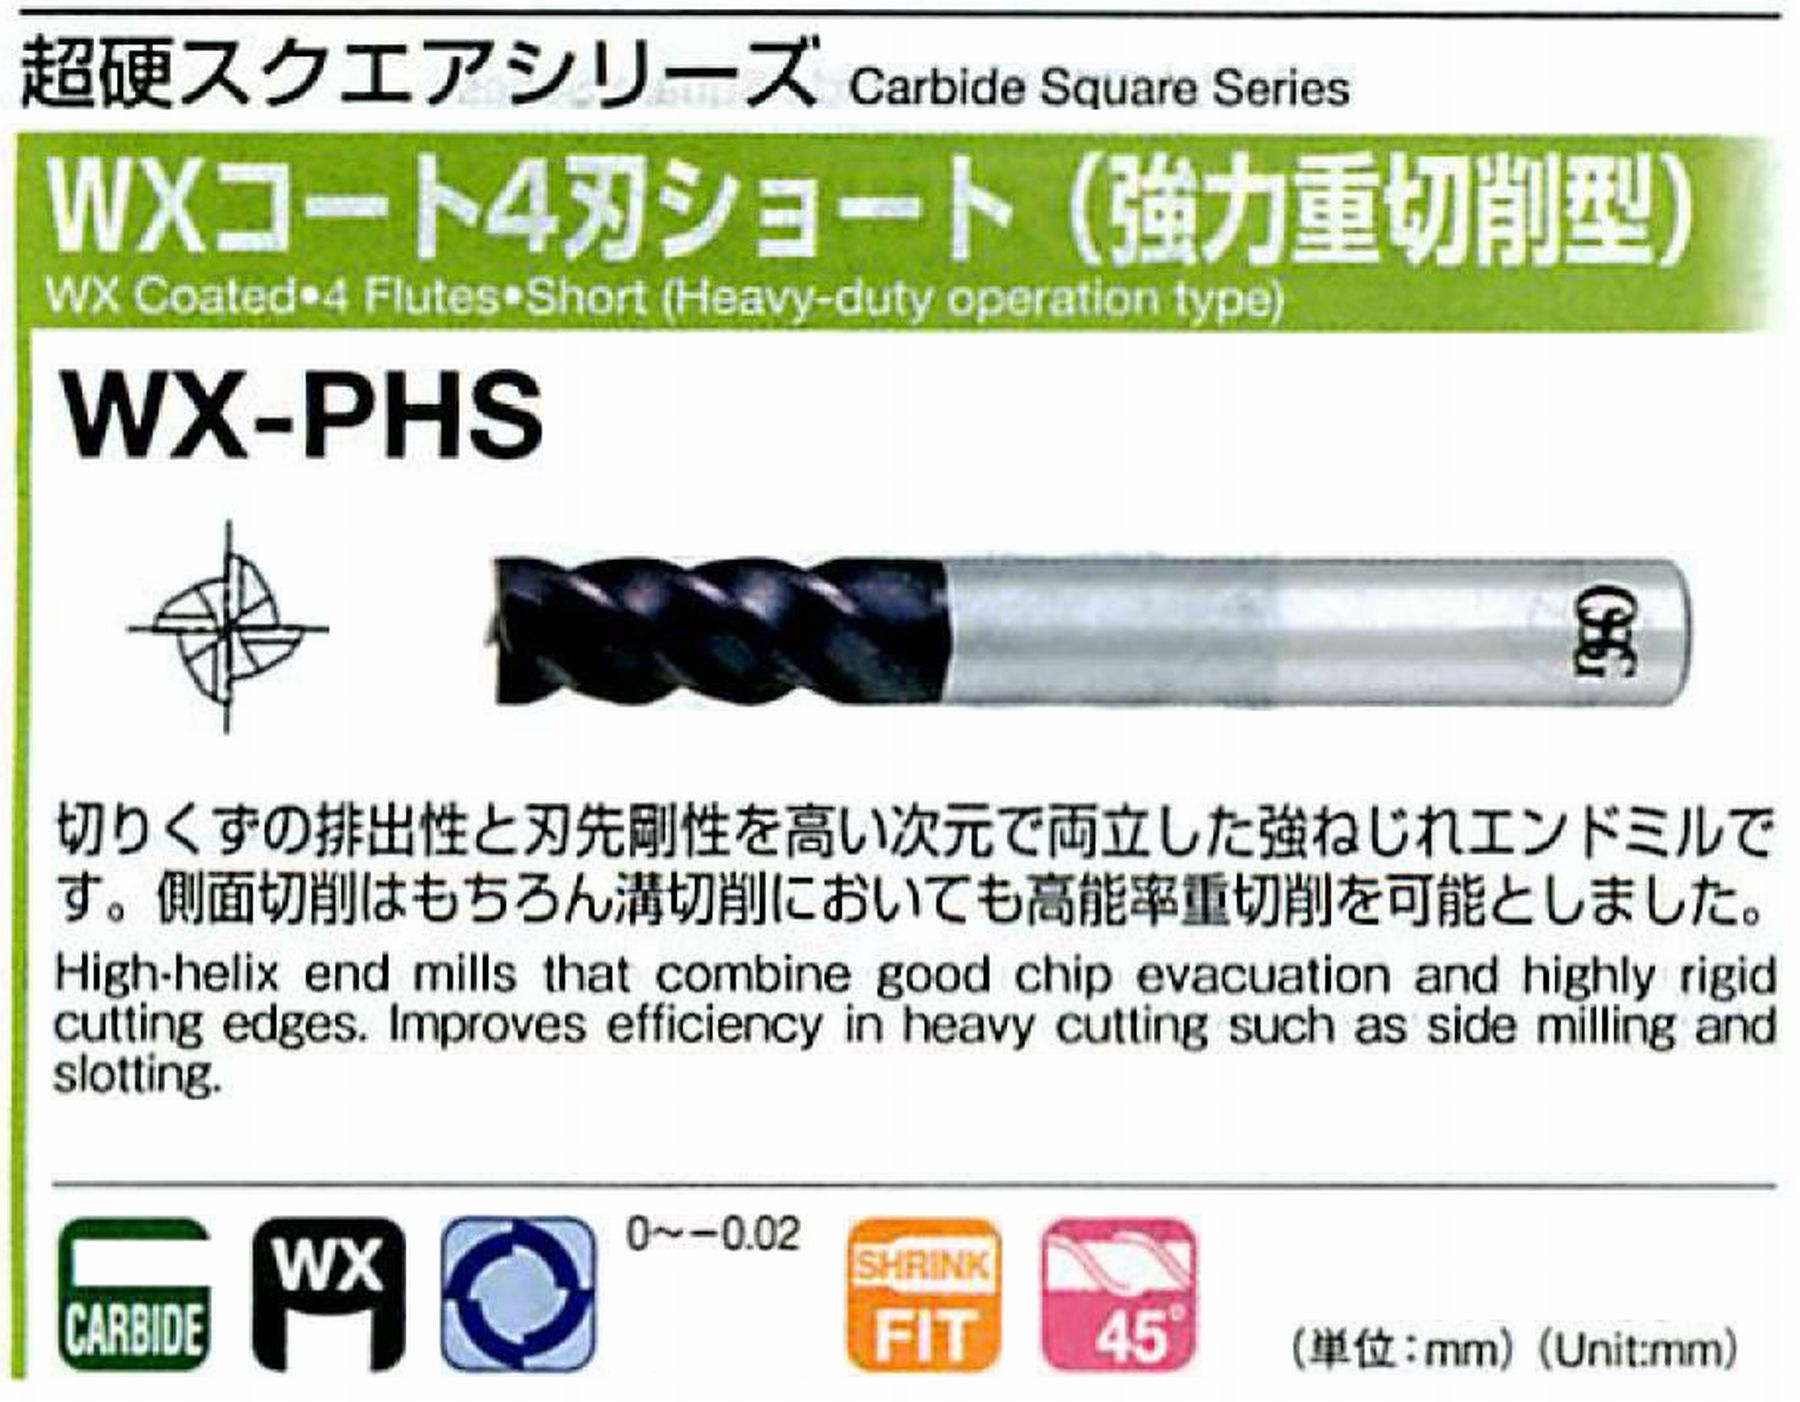 オーエスジー/OSG WXコート4刃 ショート(強力重切削型) WX-PHS 外径3 全長60 刃長8 シャンク径6mm